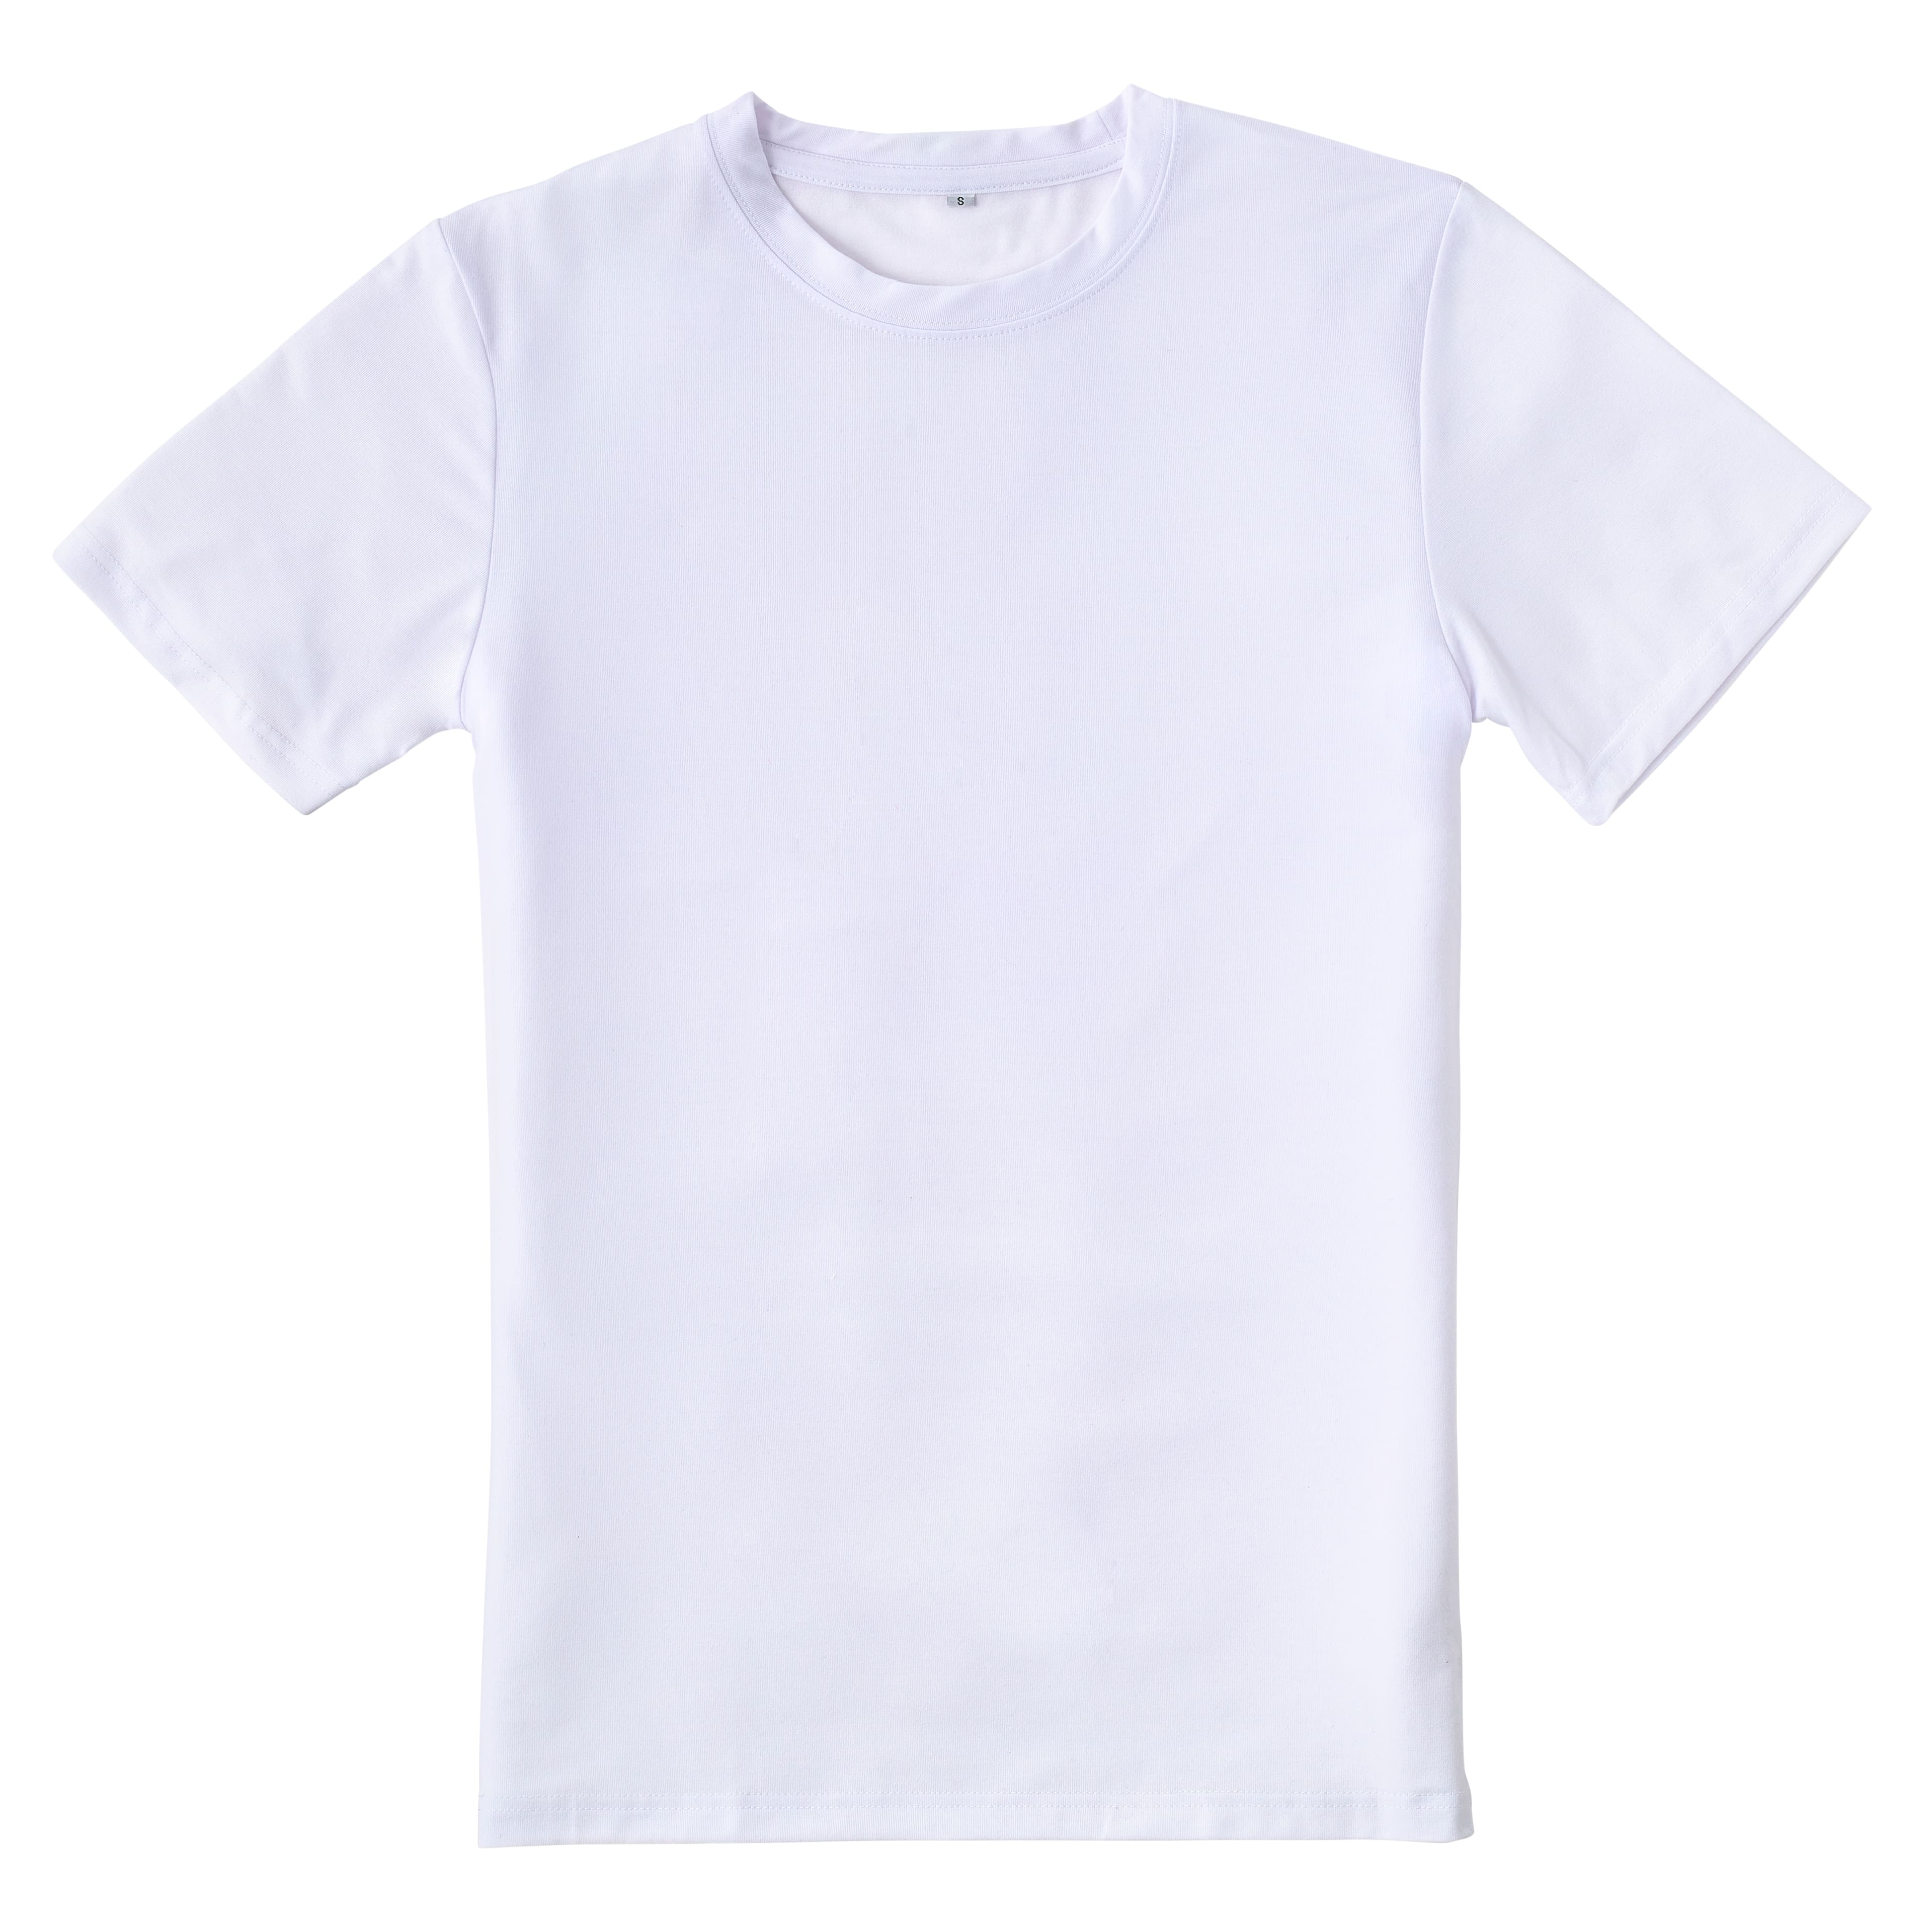 Toddler Sublimation Tshirt, Sublimation Shirt, Sublimation Tee, White Toddler Tee, Sublimation Blank, Crew Neck Shirt, Shirt for Sublimation